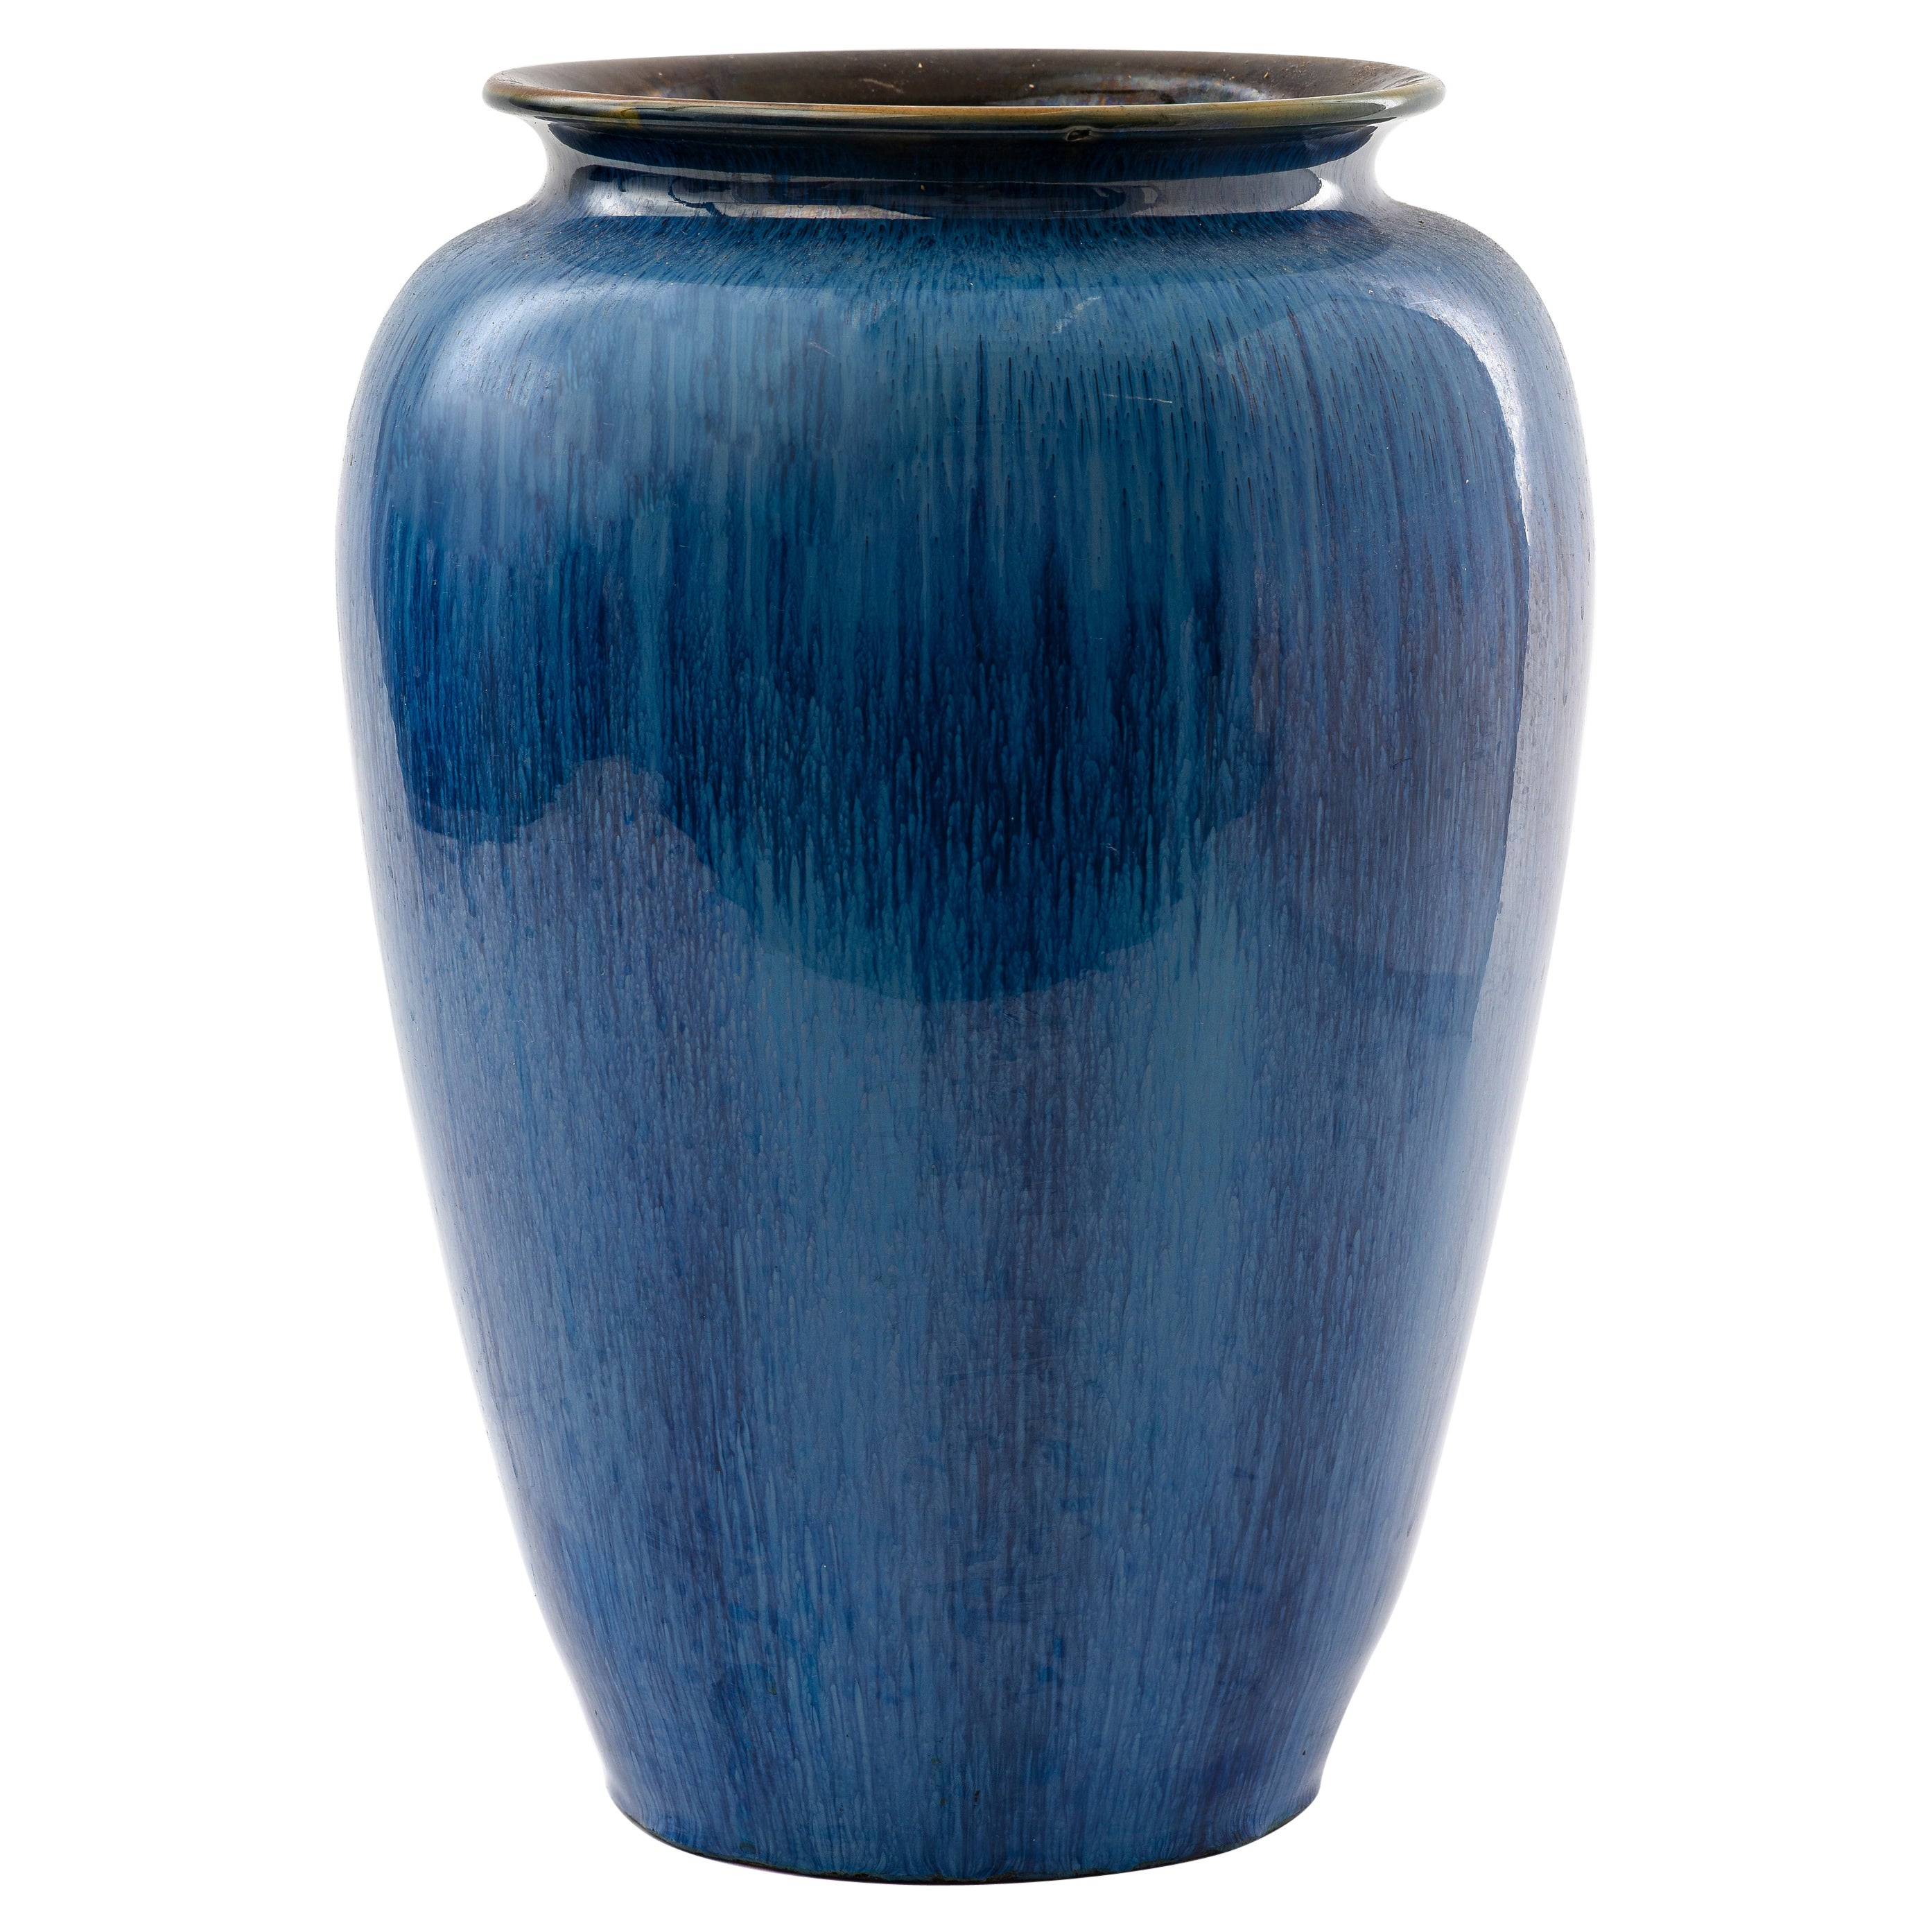 Bourne Denby English Blue Glaze Pottery Vase